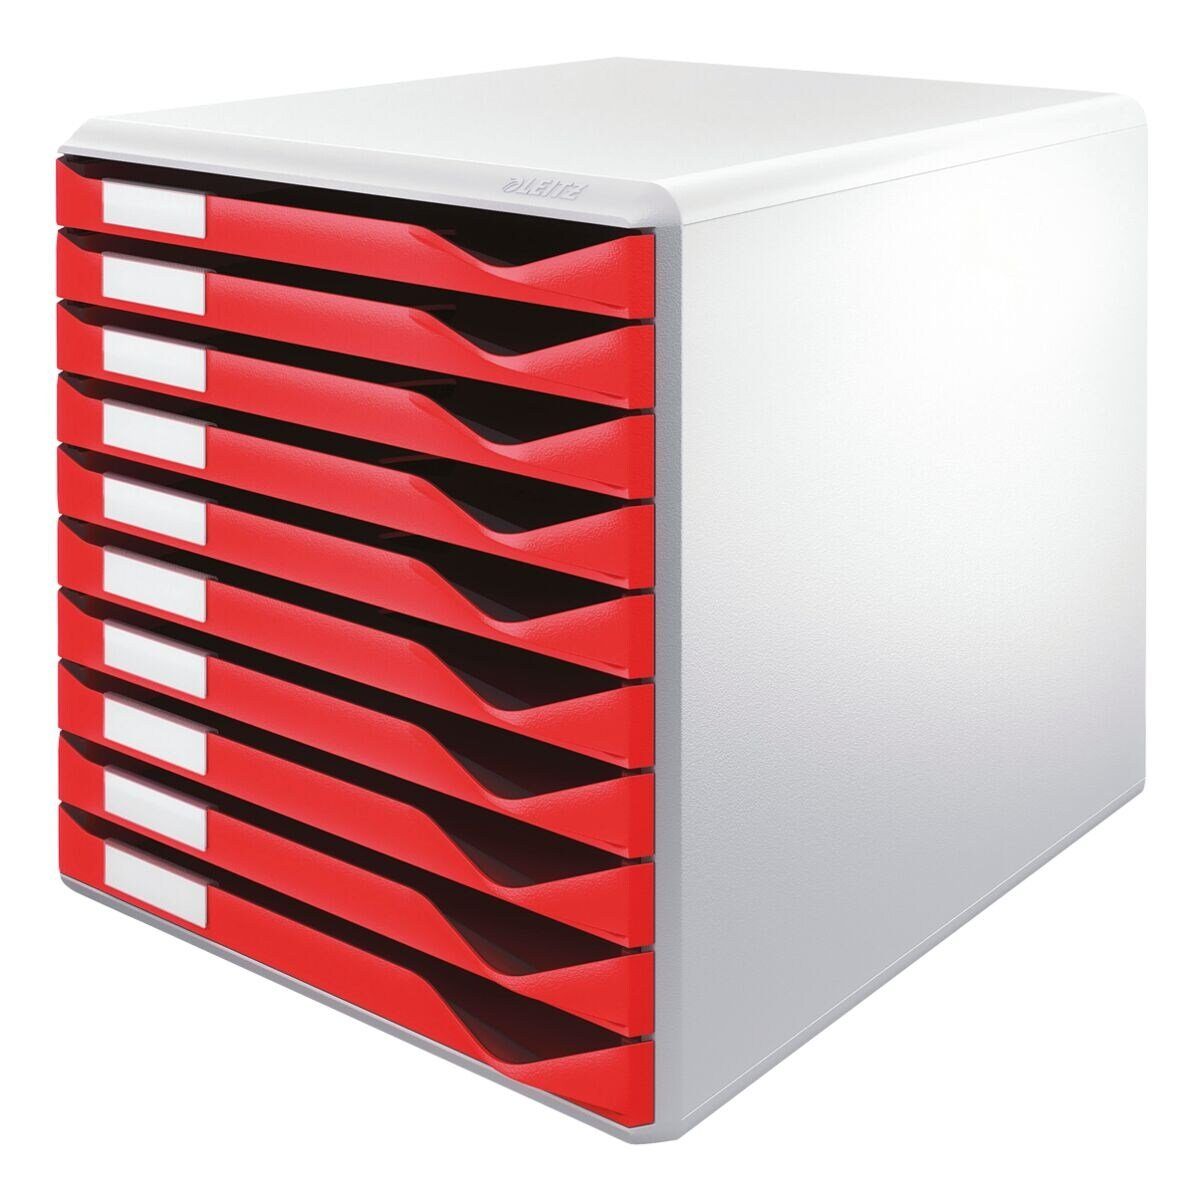 LEITZ Schubladenbox Formular-Set 5281, mit 10 Schubladen, geschlossen bordeaux